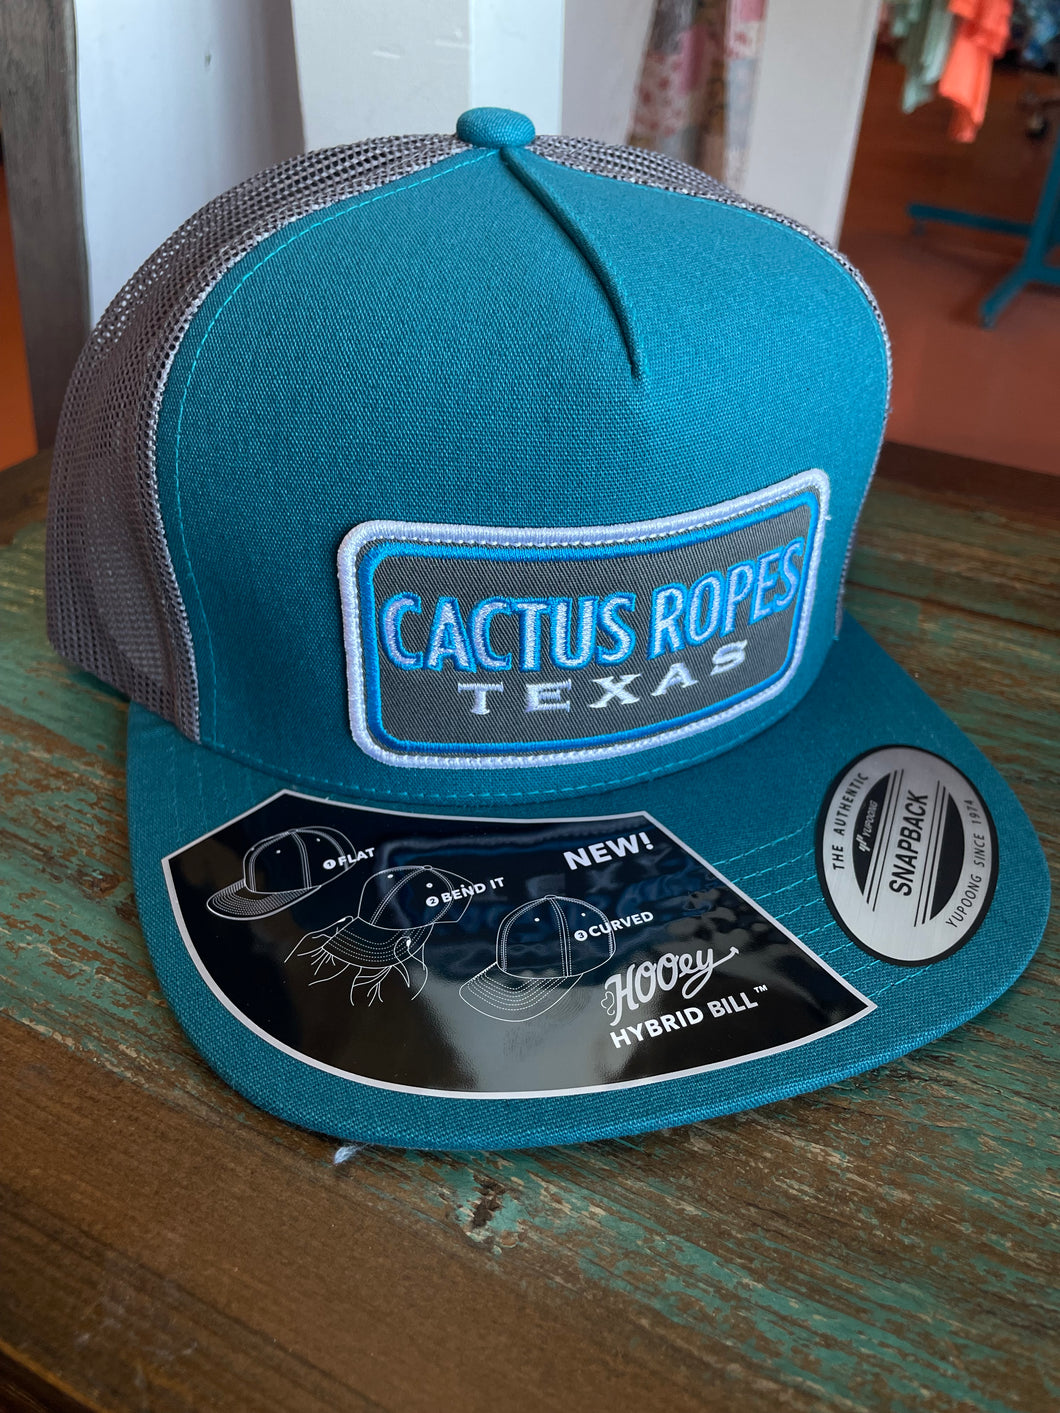 Cactus Ropes Blue/Grey Cap